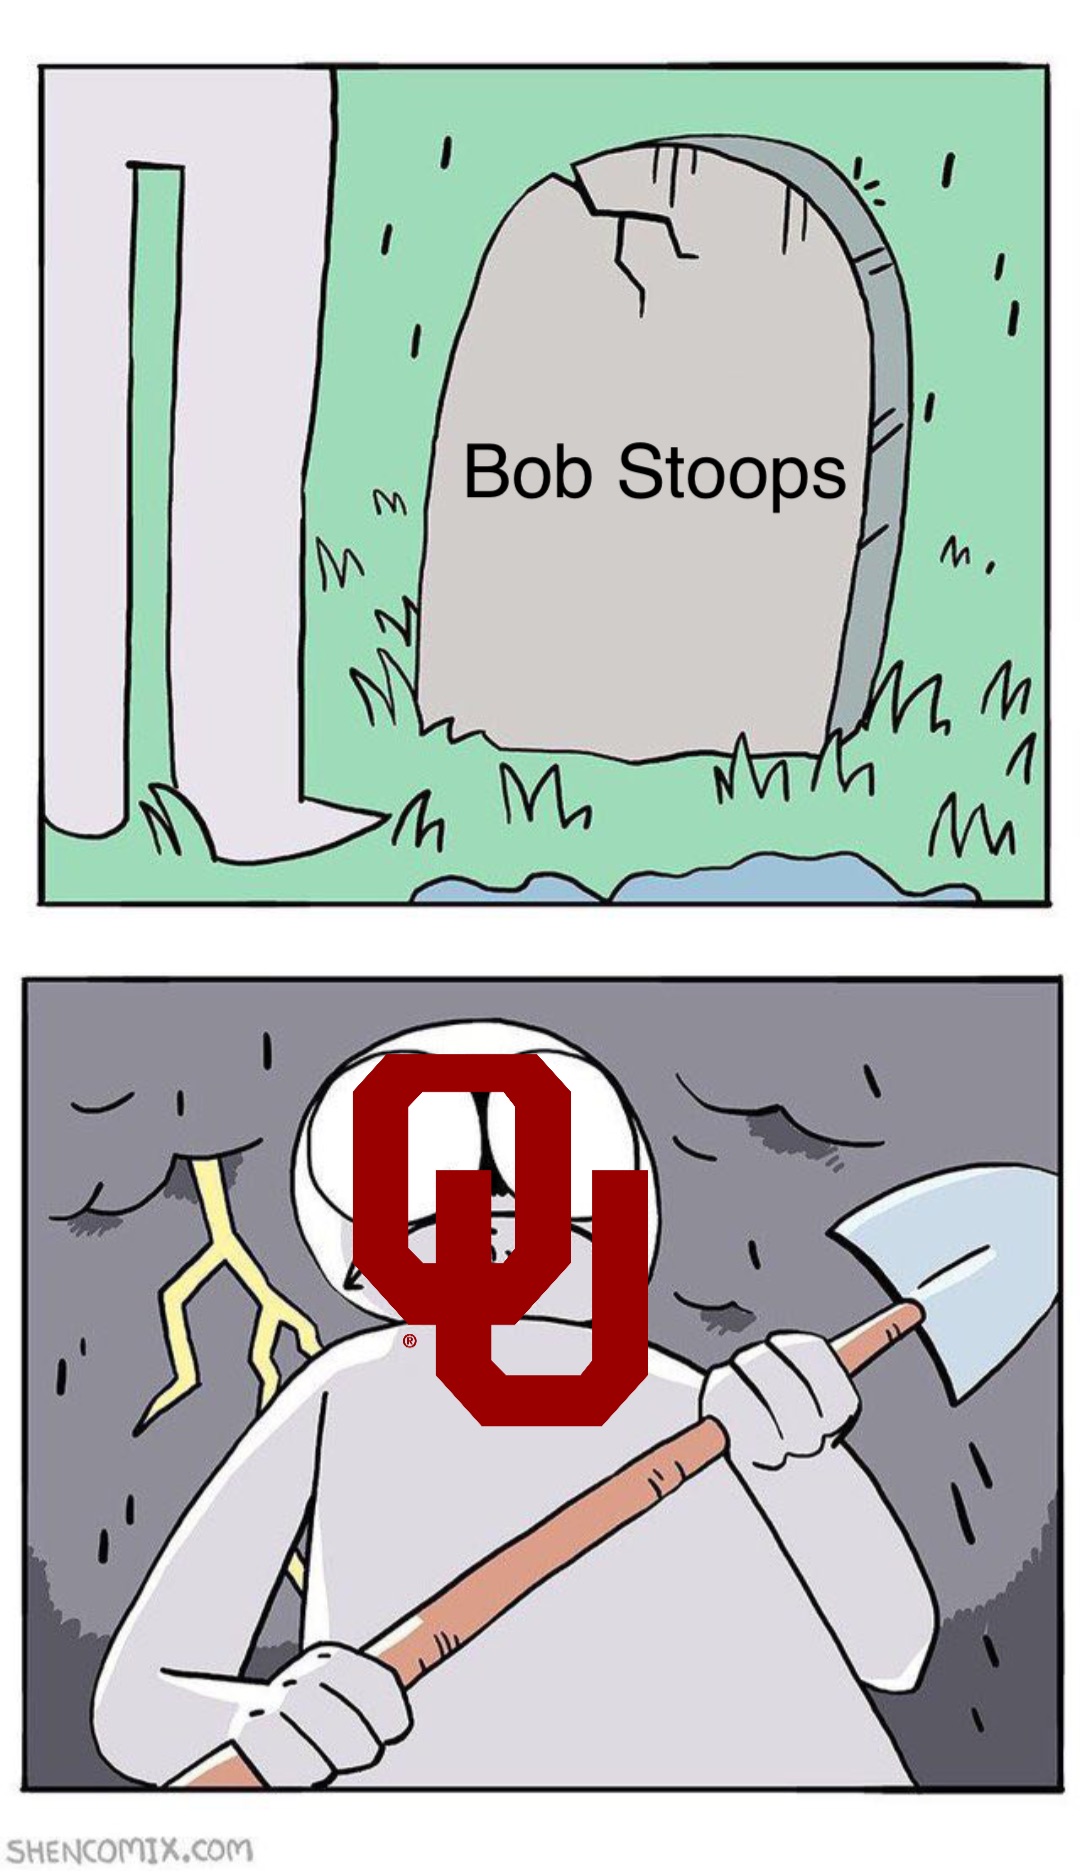 Bob Stoops